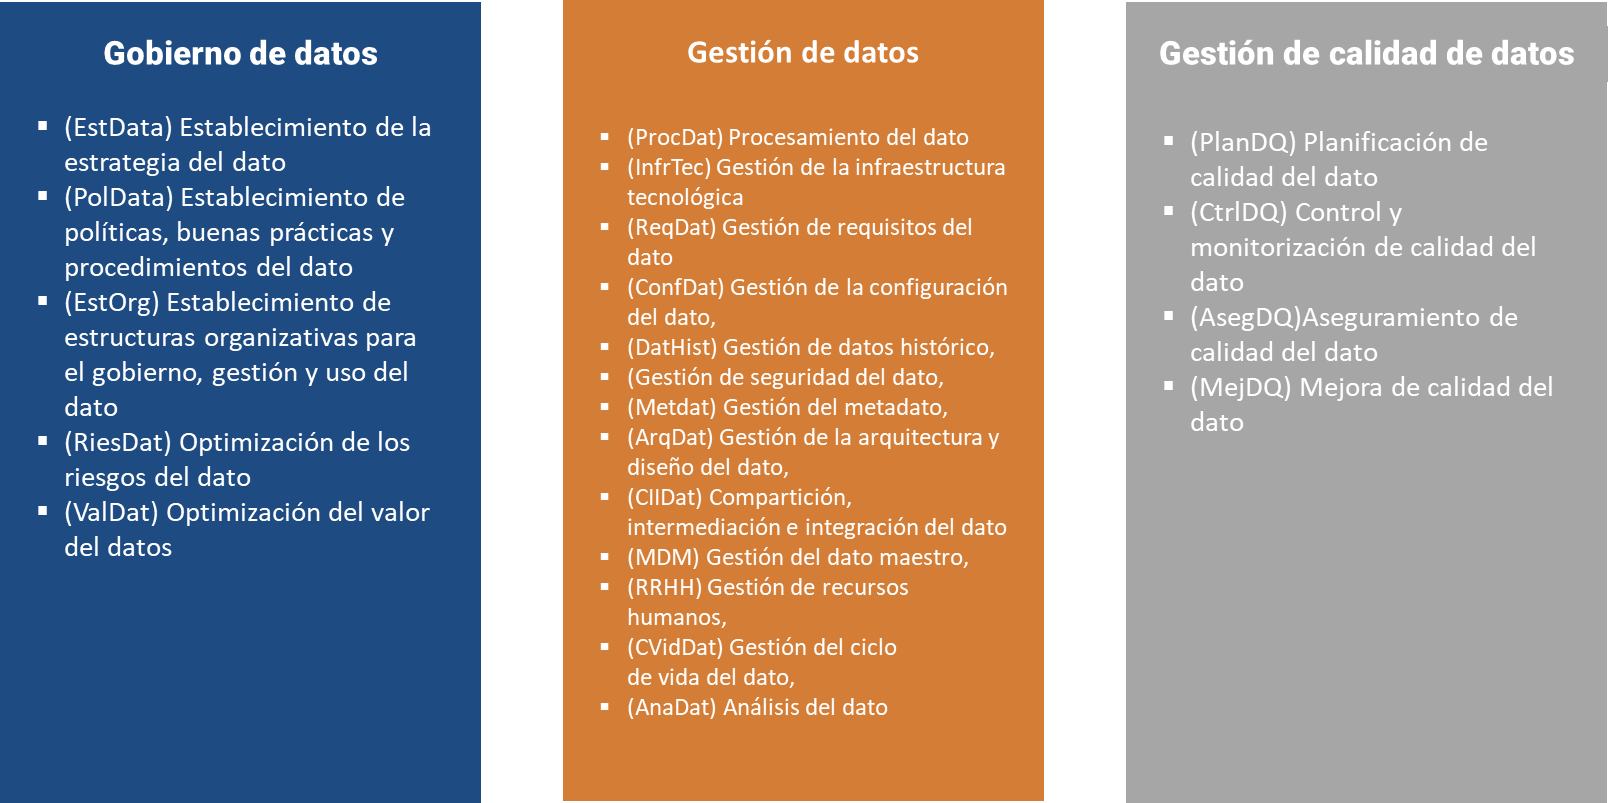 Modelo de referencia de procesos de MAMD. DM: gestión del dato; DQM: gestión de calidad del dato; DG: gobierno del dato.